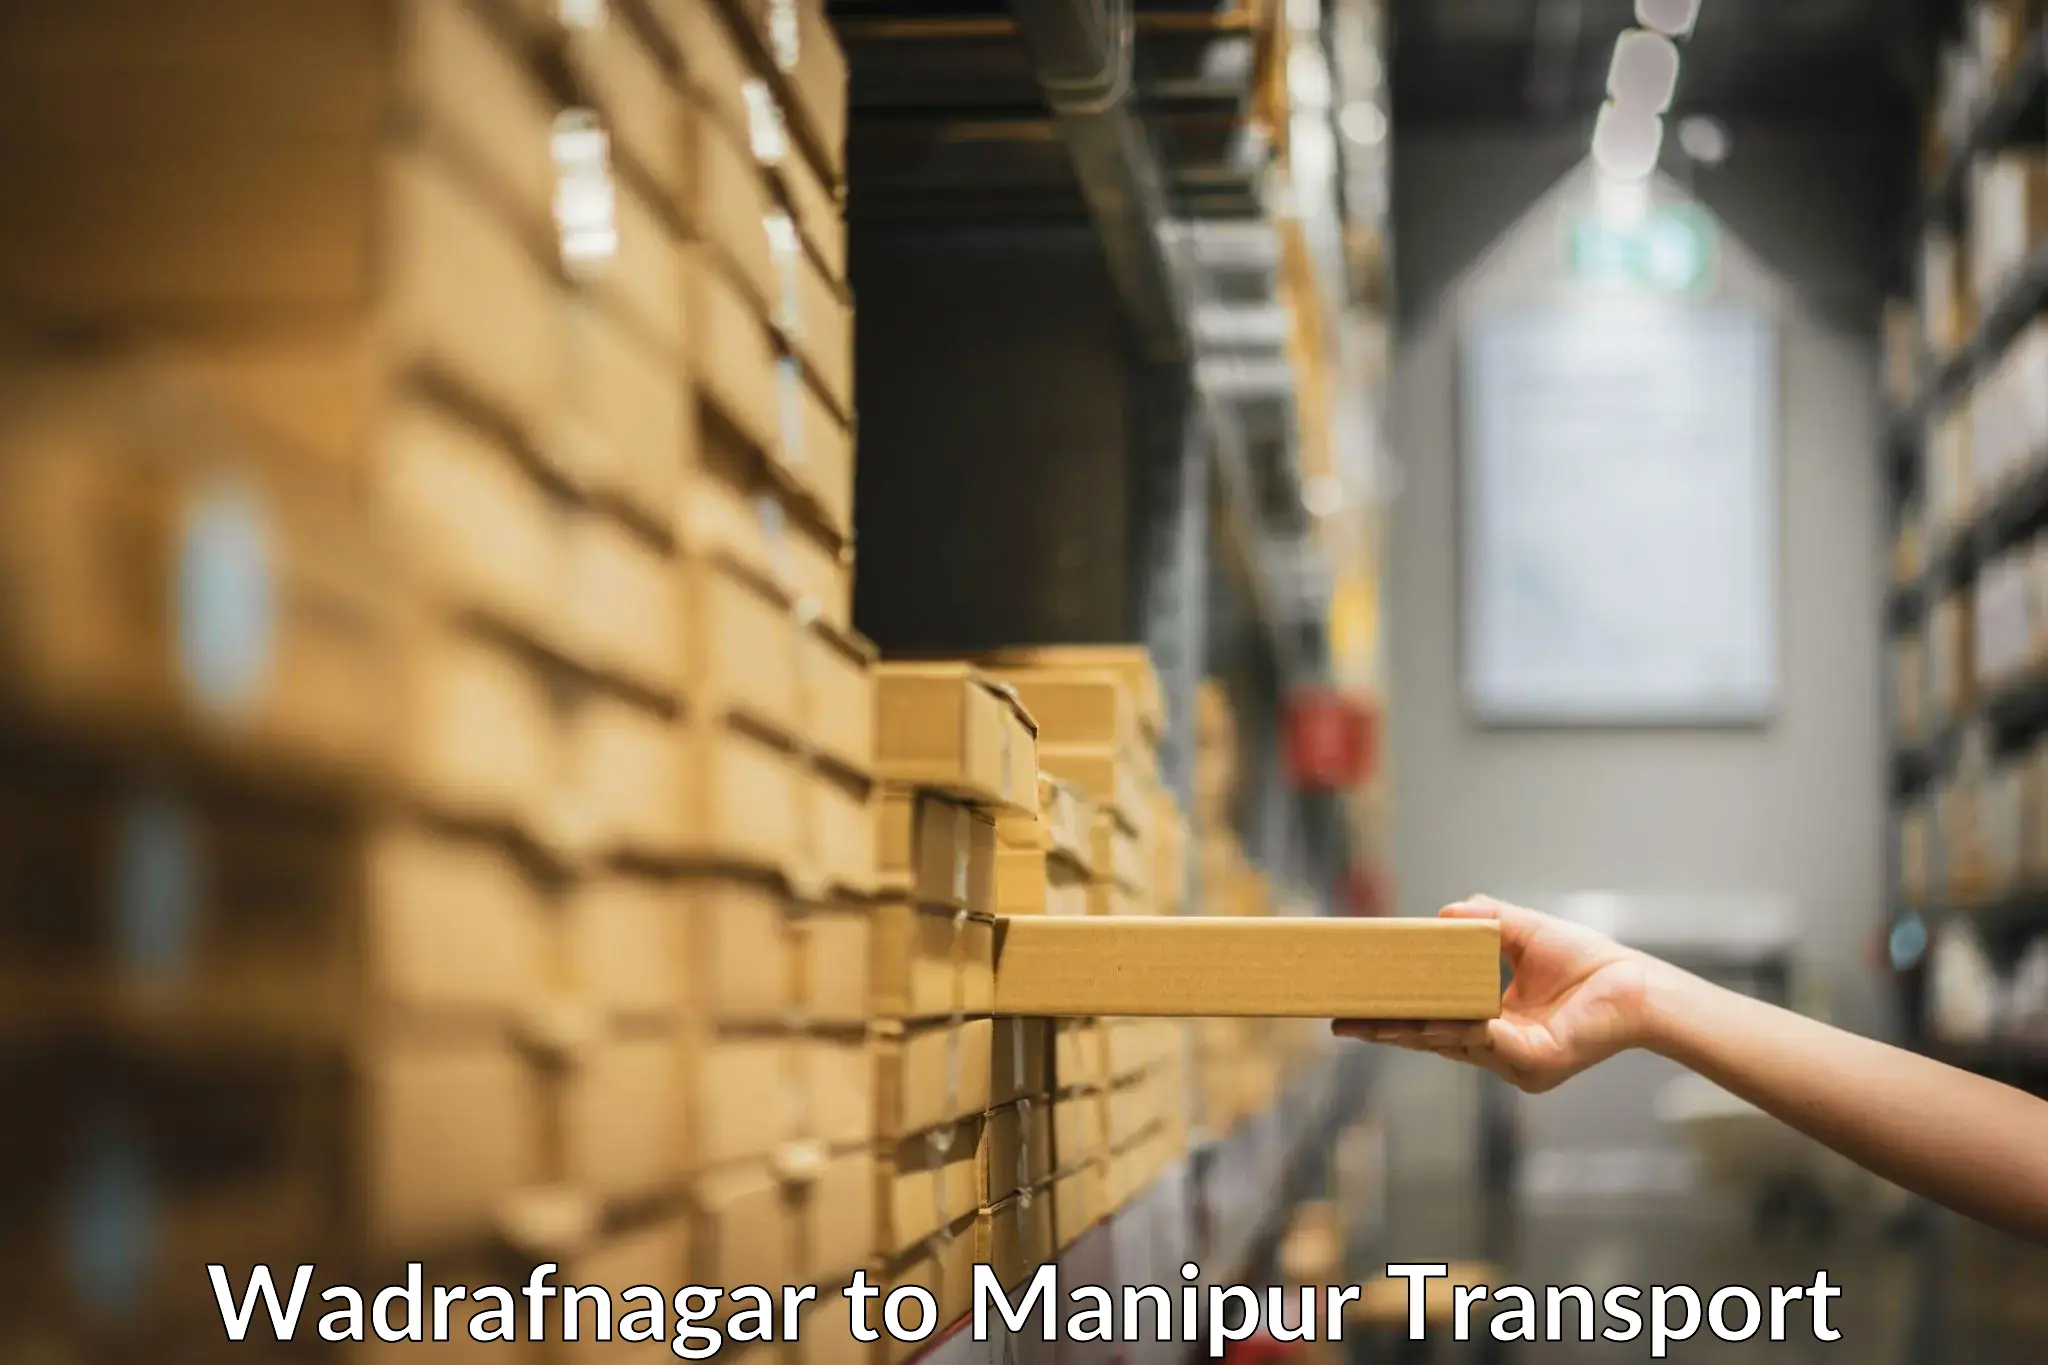 Commercial transport service Wadrafnagar to NIT Manipur